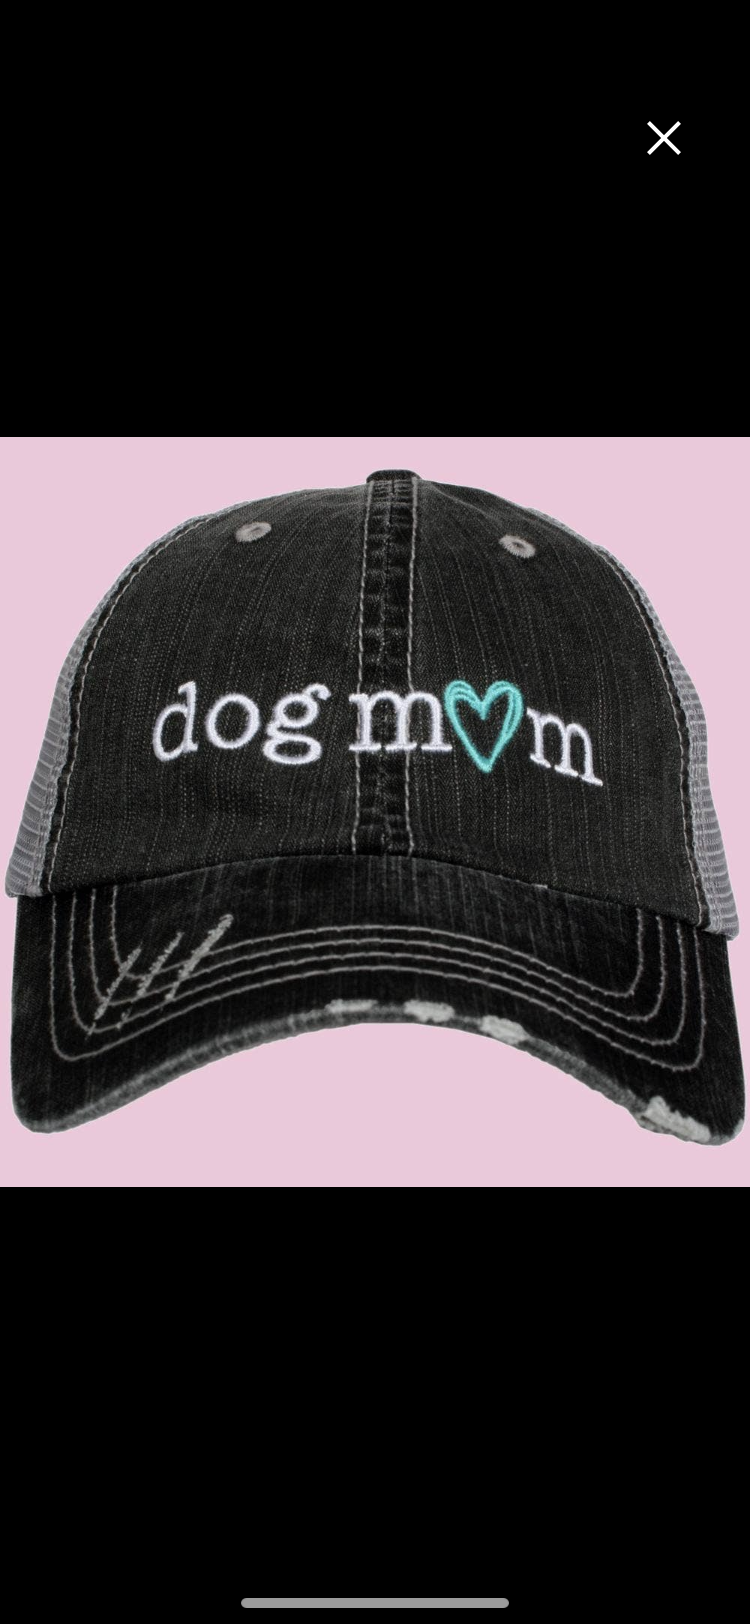 Vintage Dog Mom hat